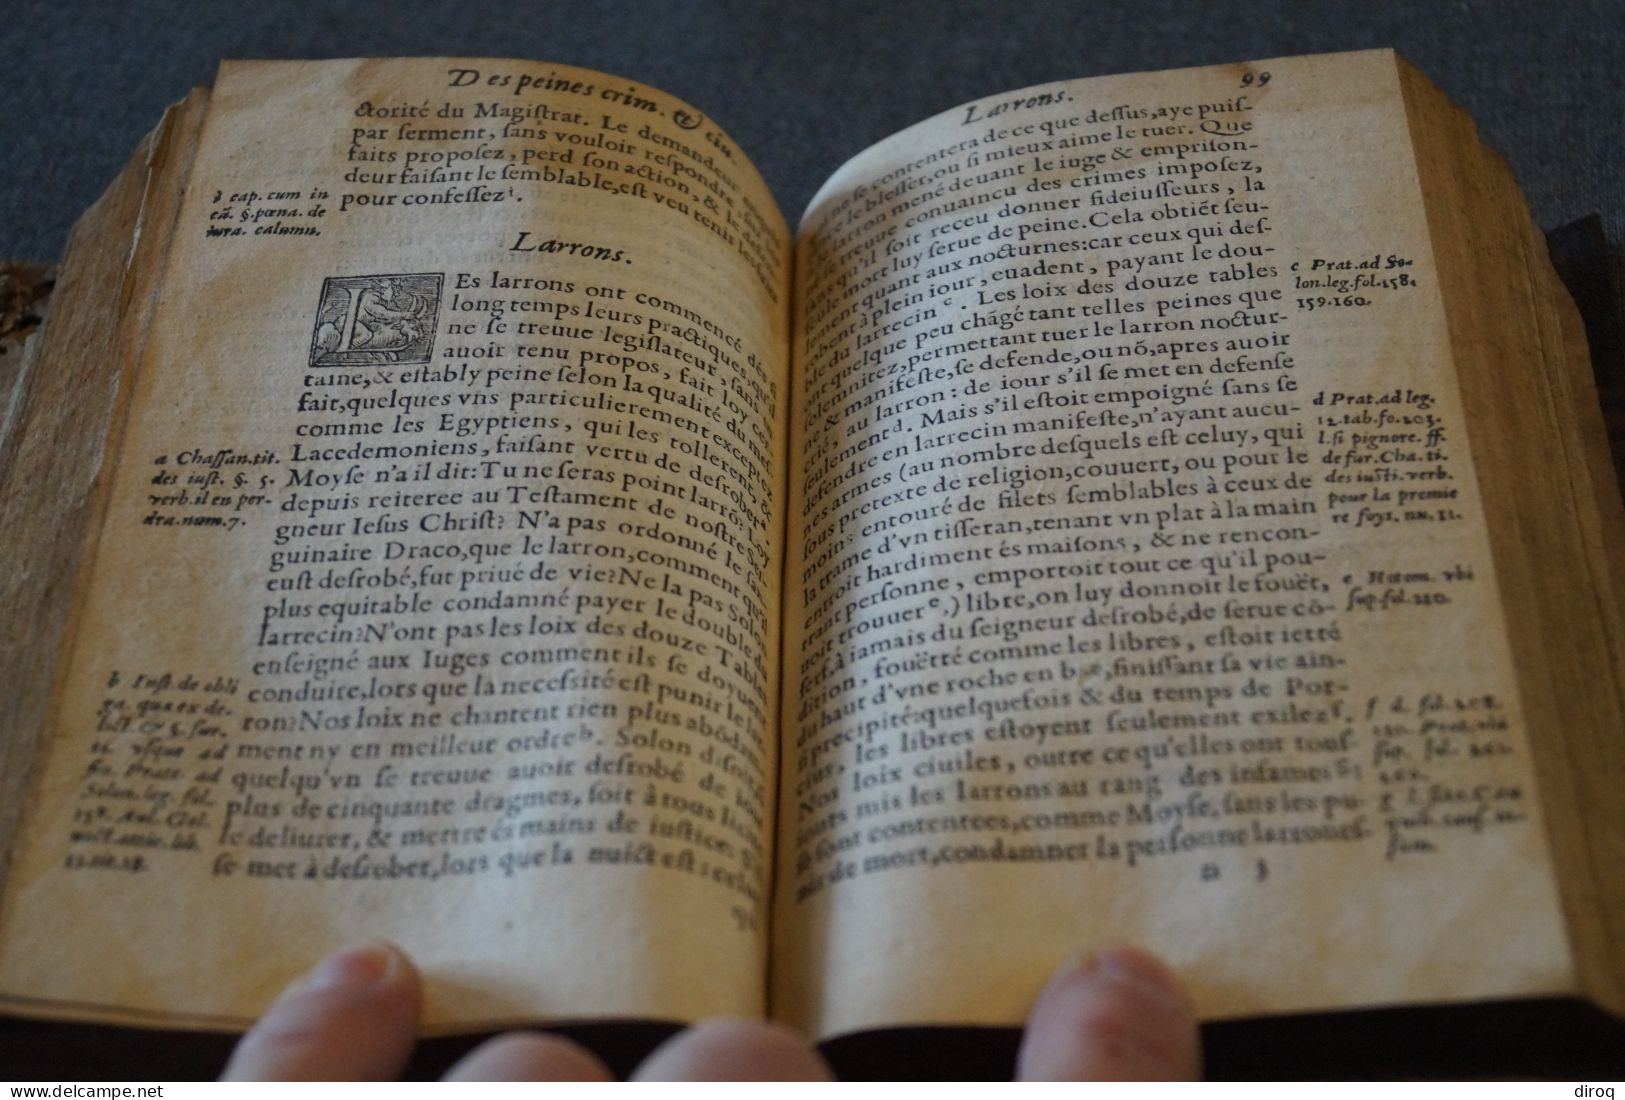 RARE 1573,Traité des peines et amandes pour matière criminelles,complet 175 pages,16 Cm./11 Cm.